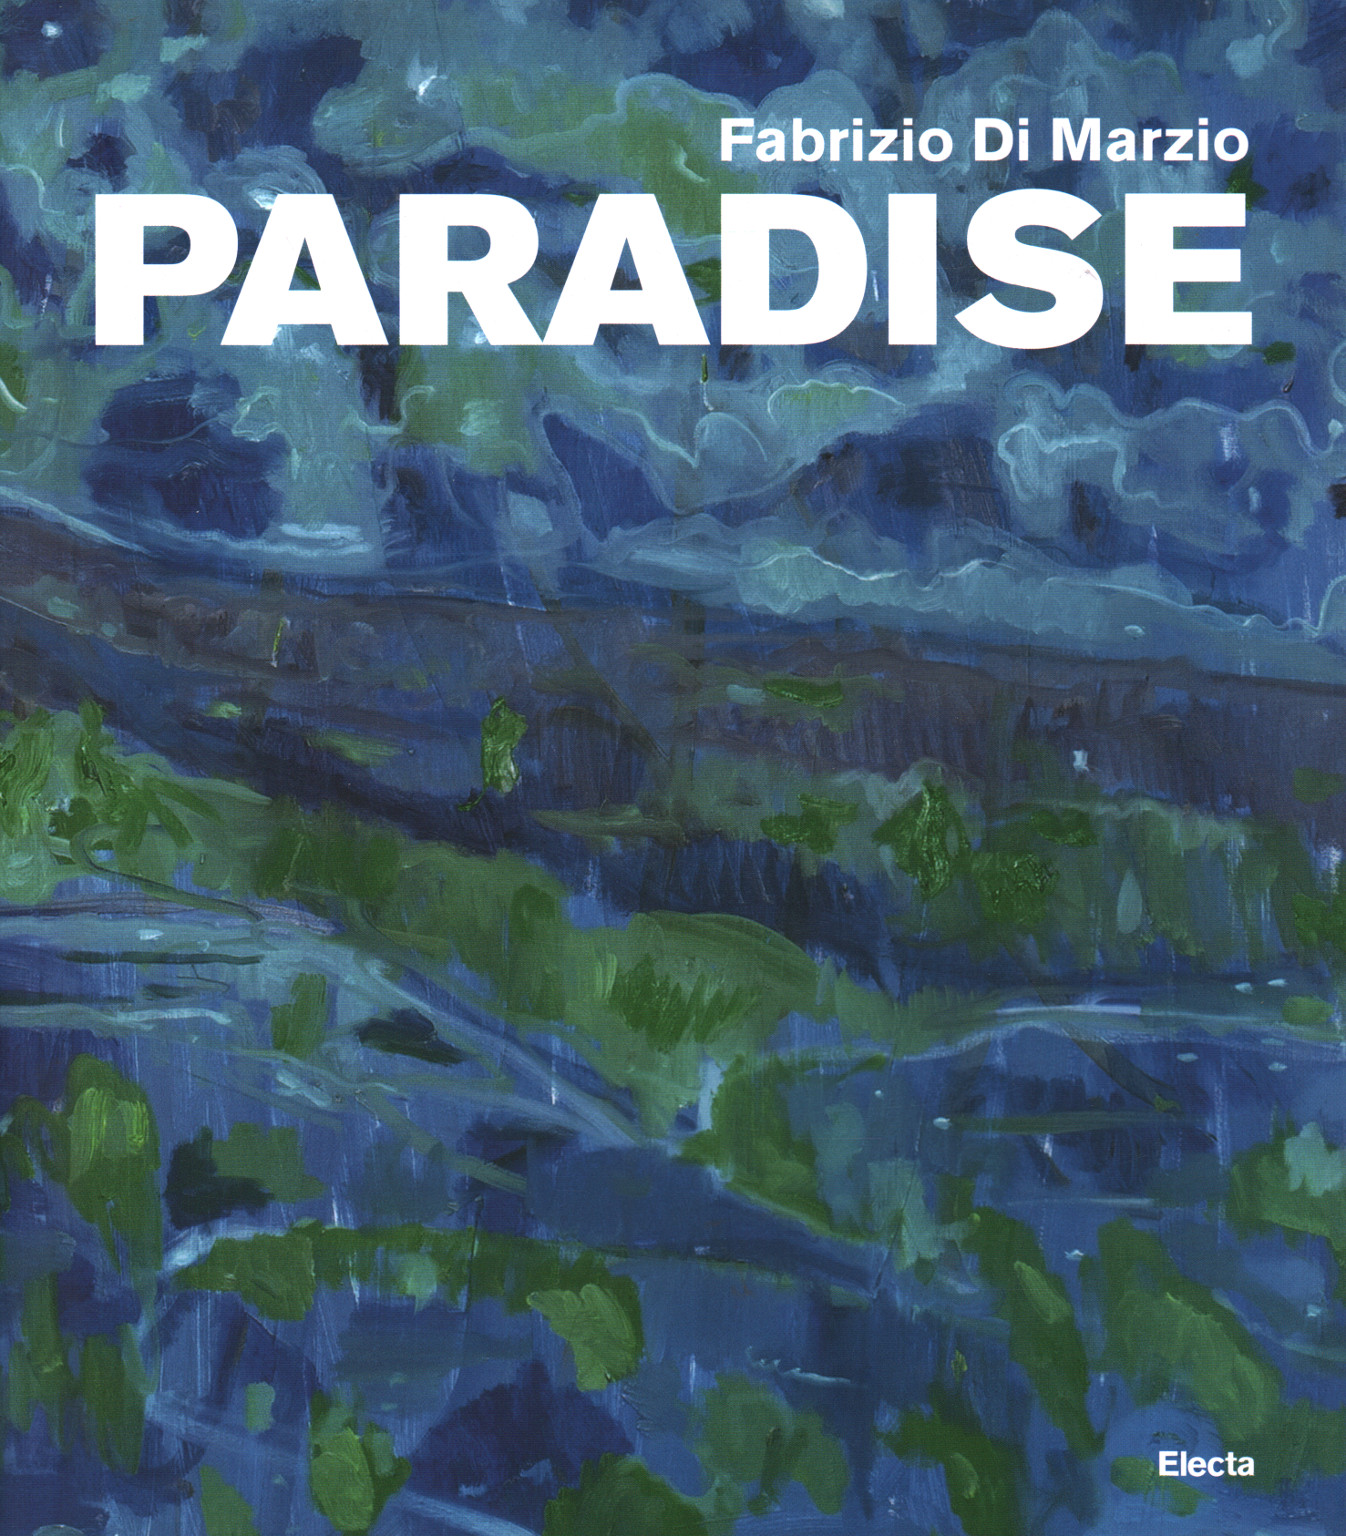 Fabrizio Di Marzio. El paraíso, s.una.